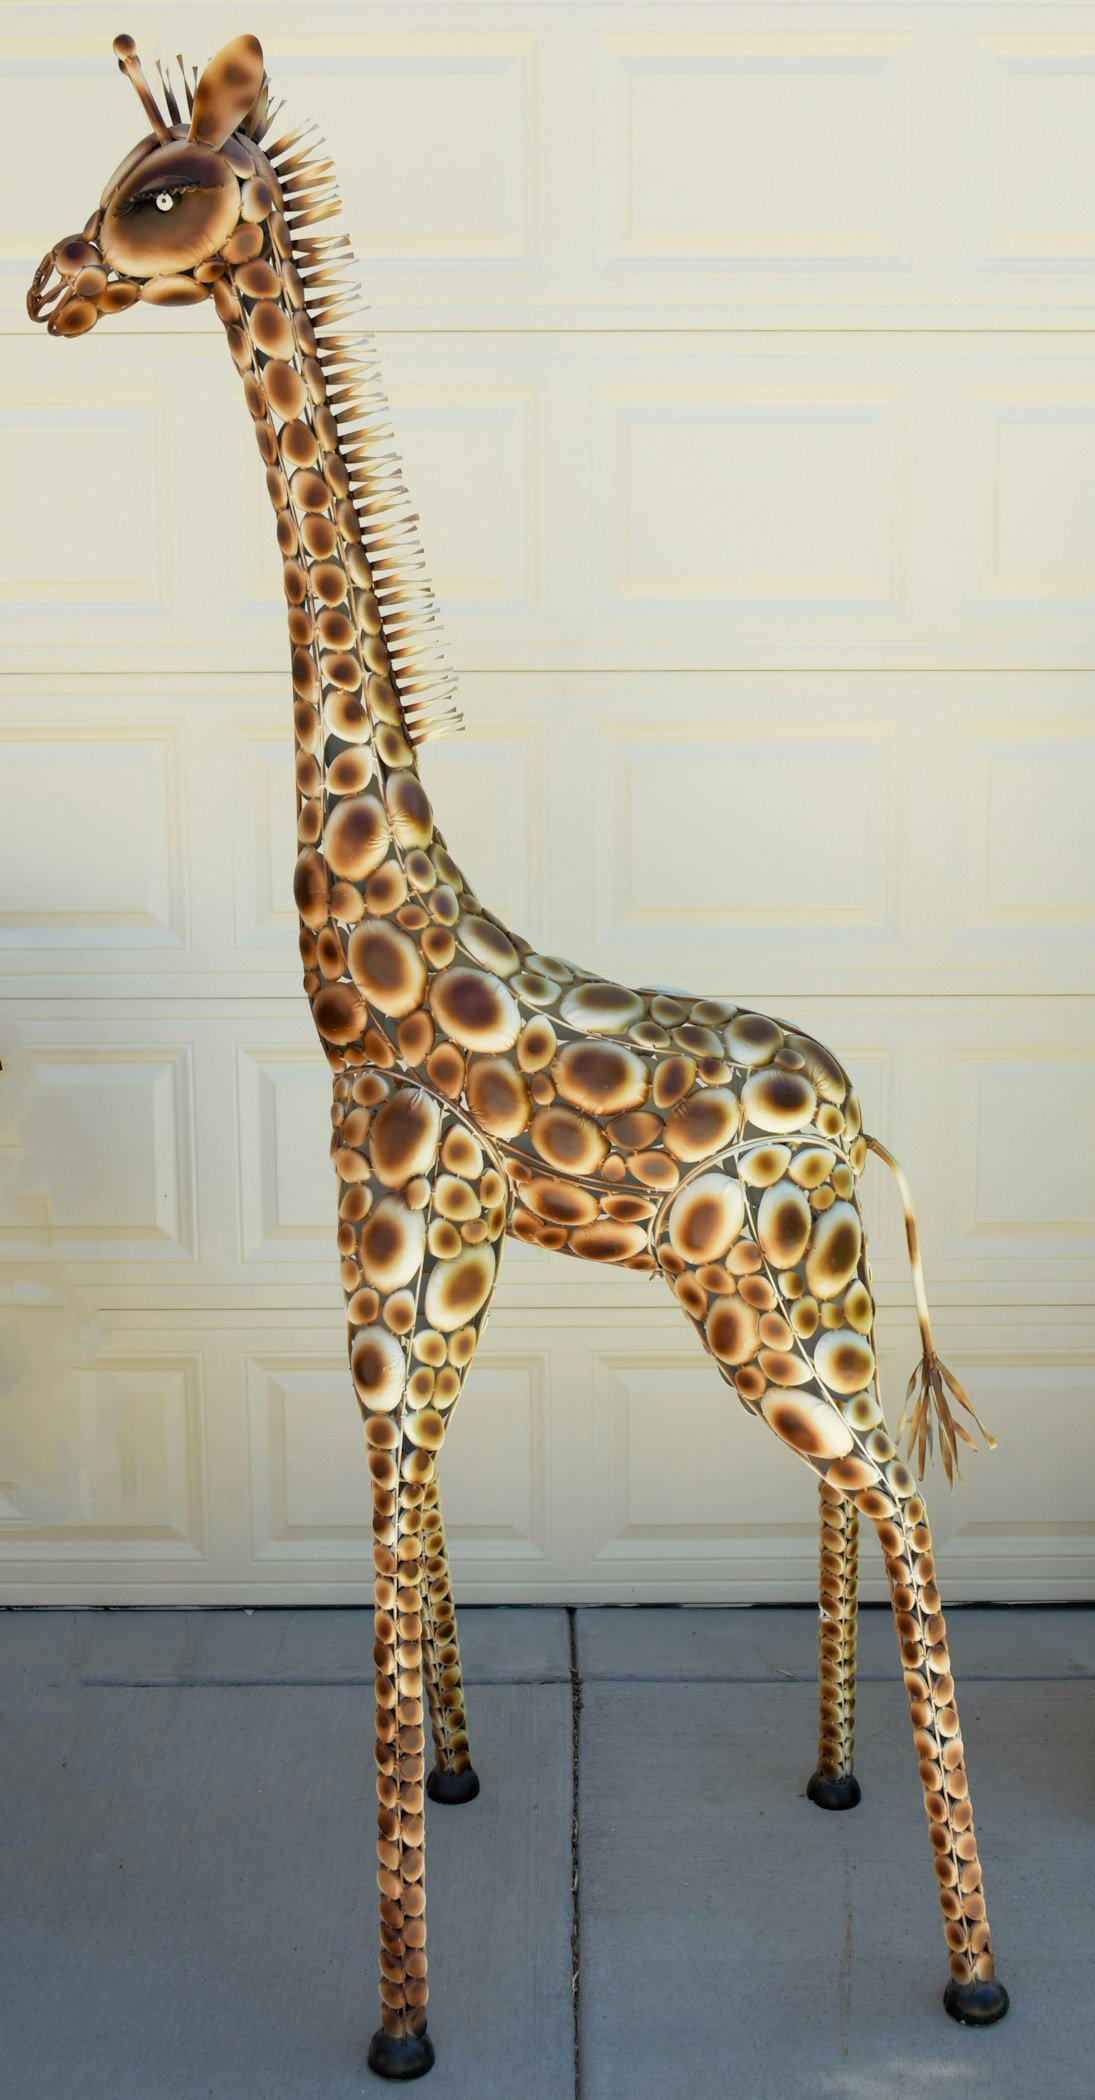 Seven Foot Tall Metal Giraffe Sculpture | EBTH